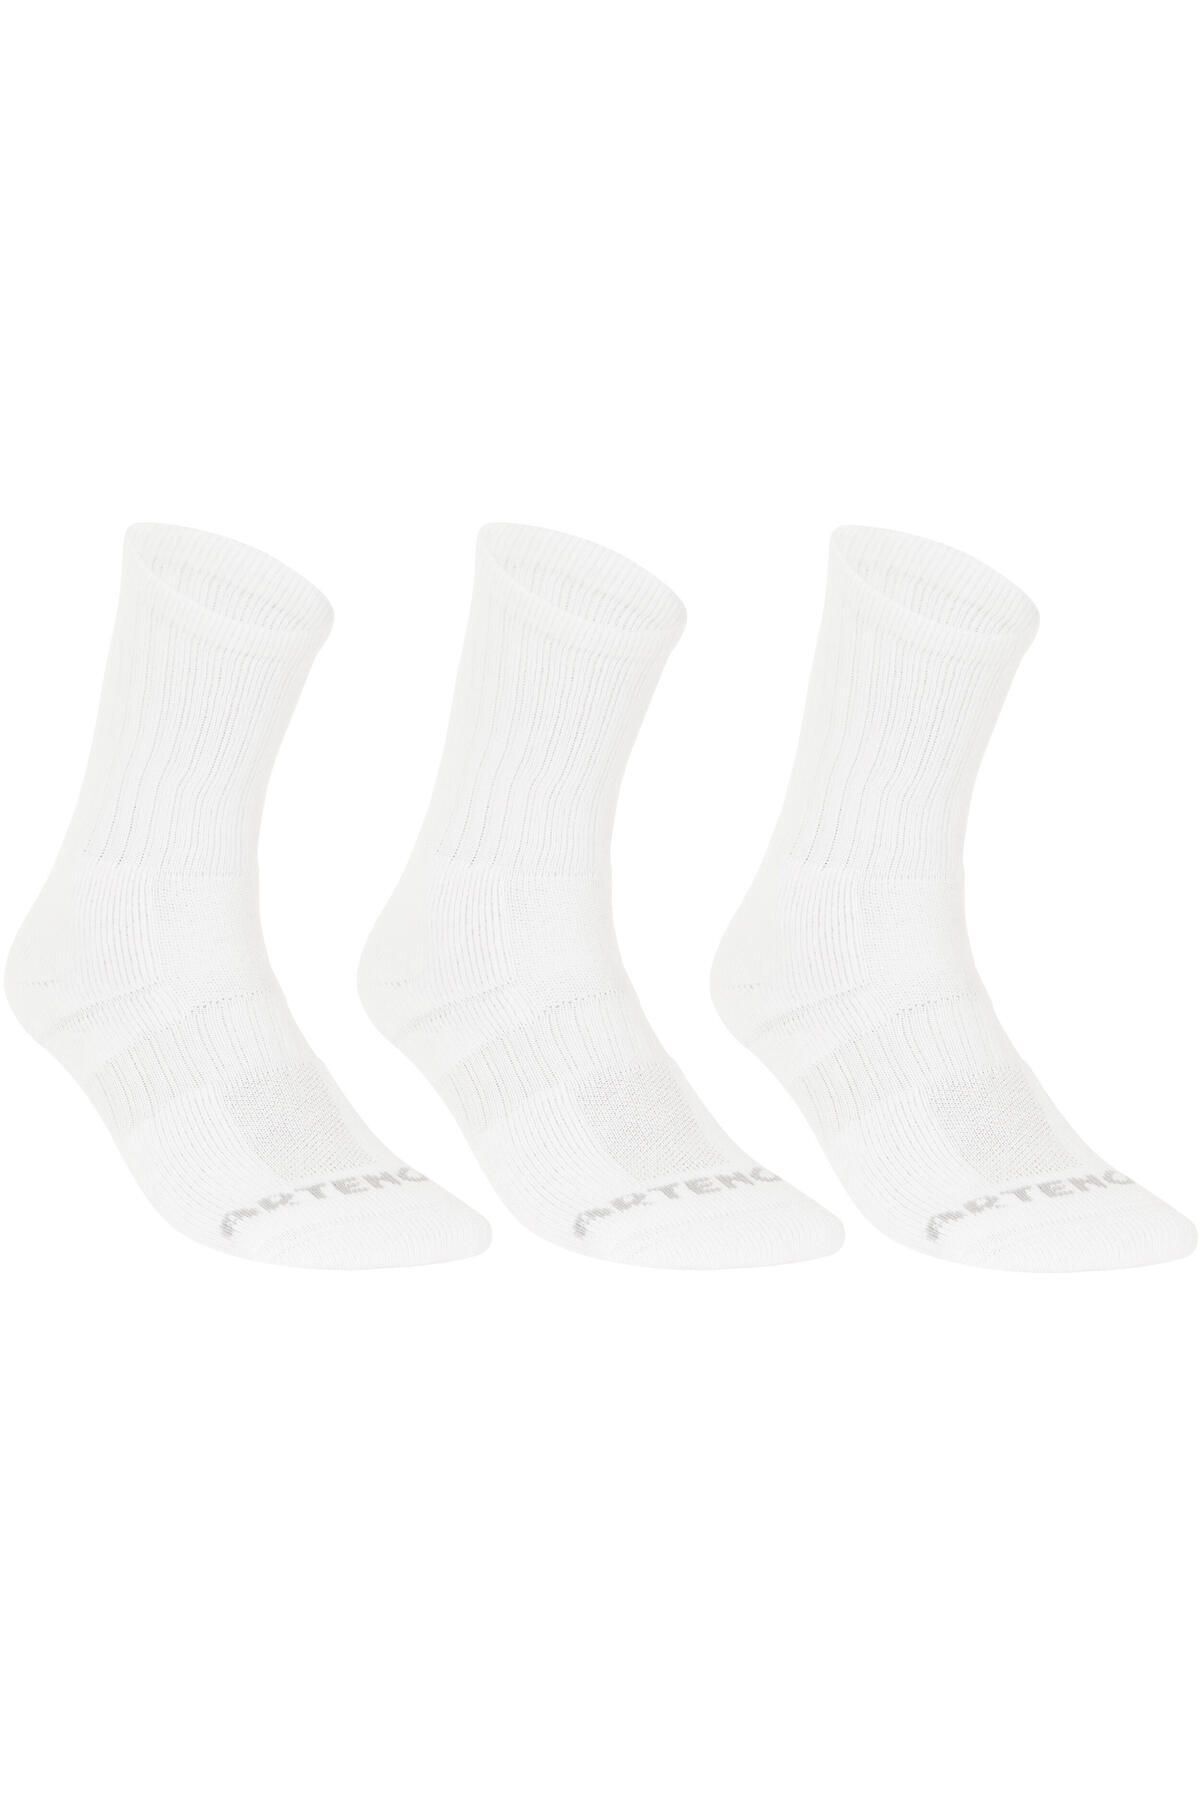 Decathlon Artengo Tenis Çorabı - Uzun Konçlu - 3'lü Paket - Beyaz - Rs 500